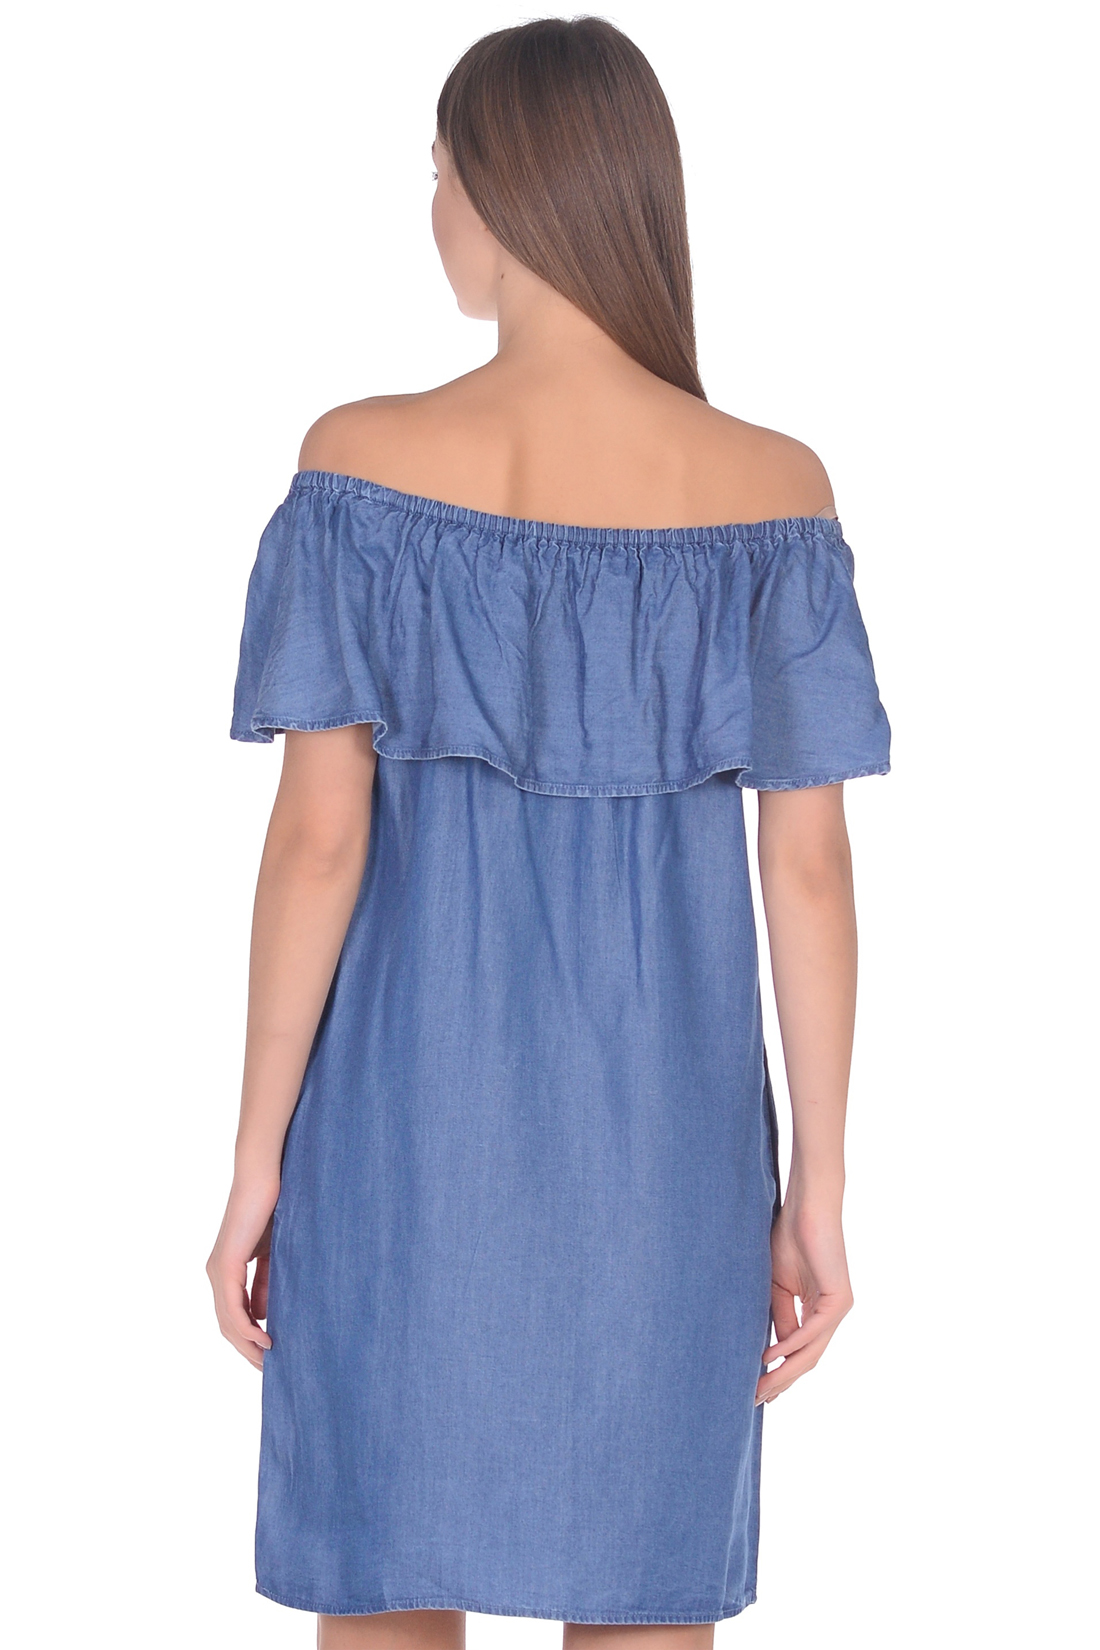 Платье с воланом из денима-шамбри (арт. baon B459102), размер M, цвет blue denim#голубой Платье с воланом из денима-шамбри (арт. baon B459102) - фото 2